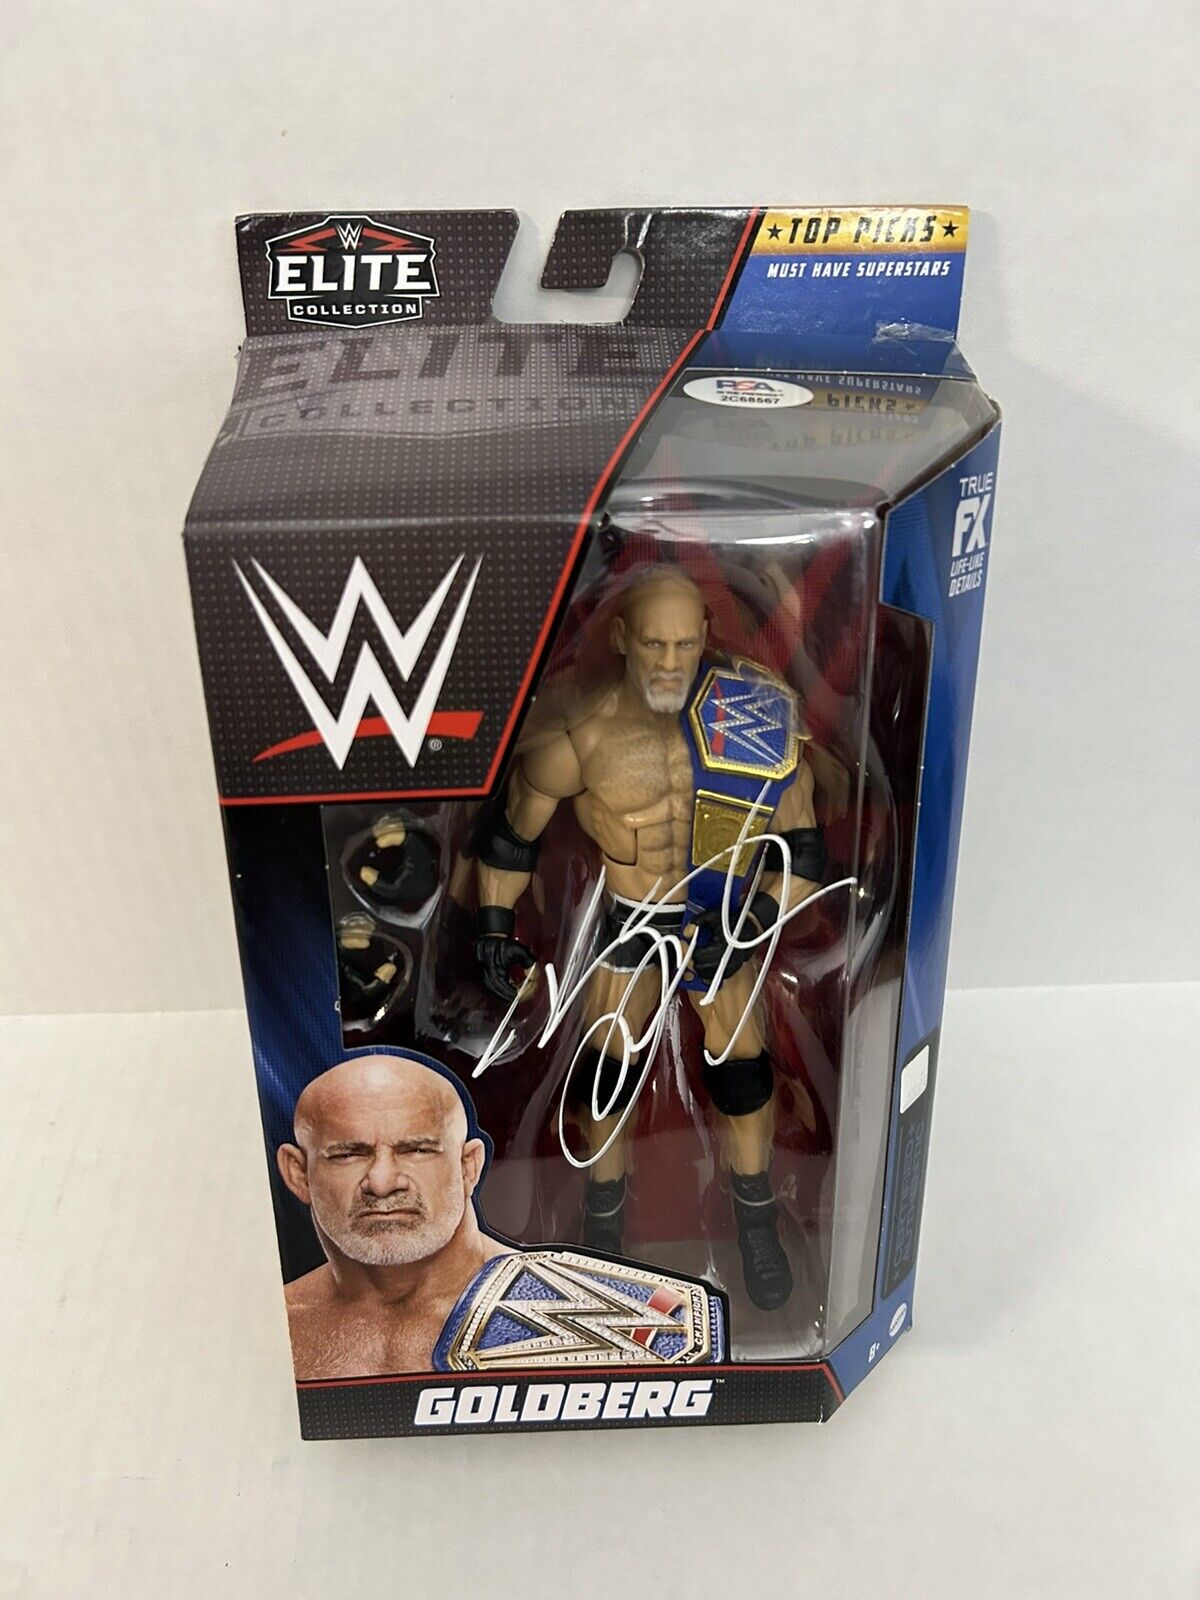 GOLDBERG Signed WWE Elite Collection Blue Belt Mattel Figure PSA/DNA